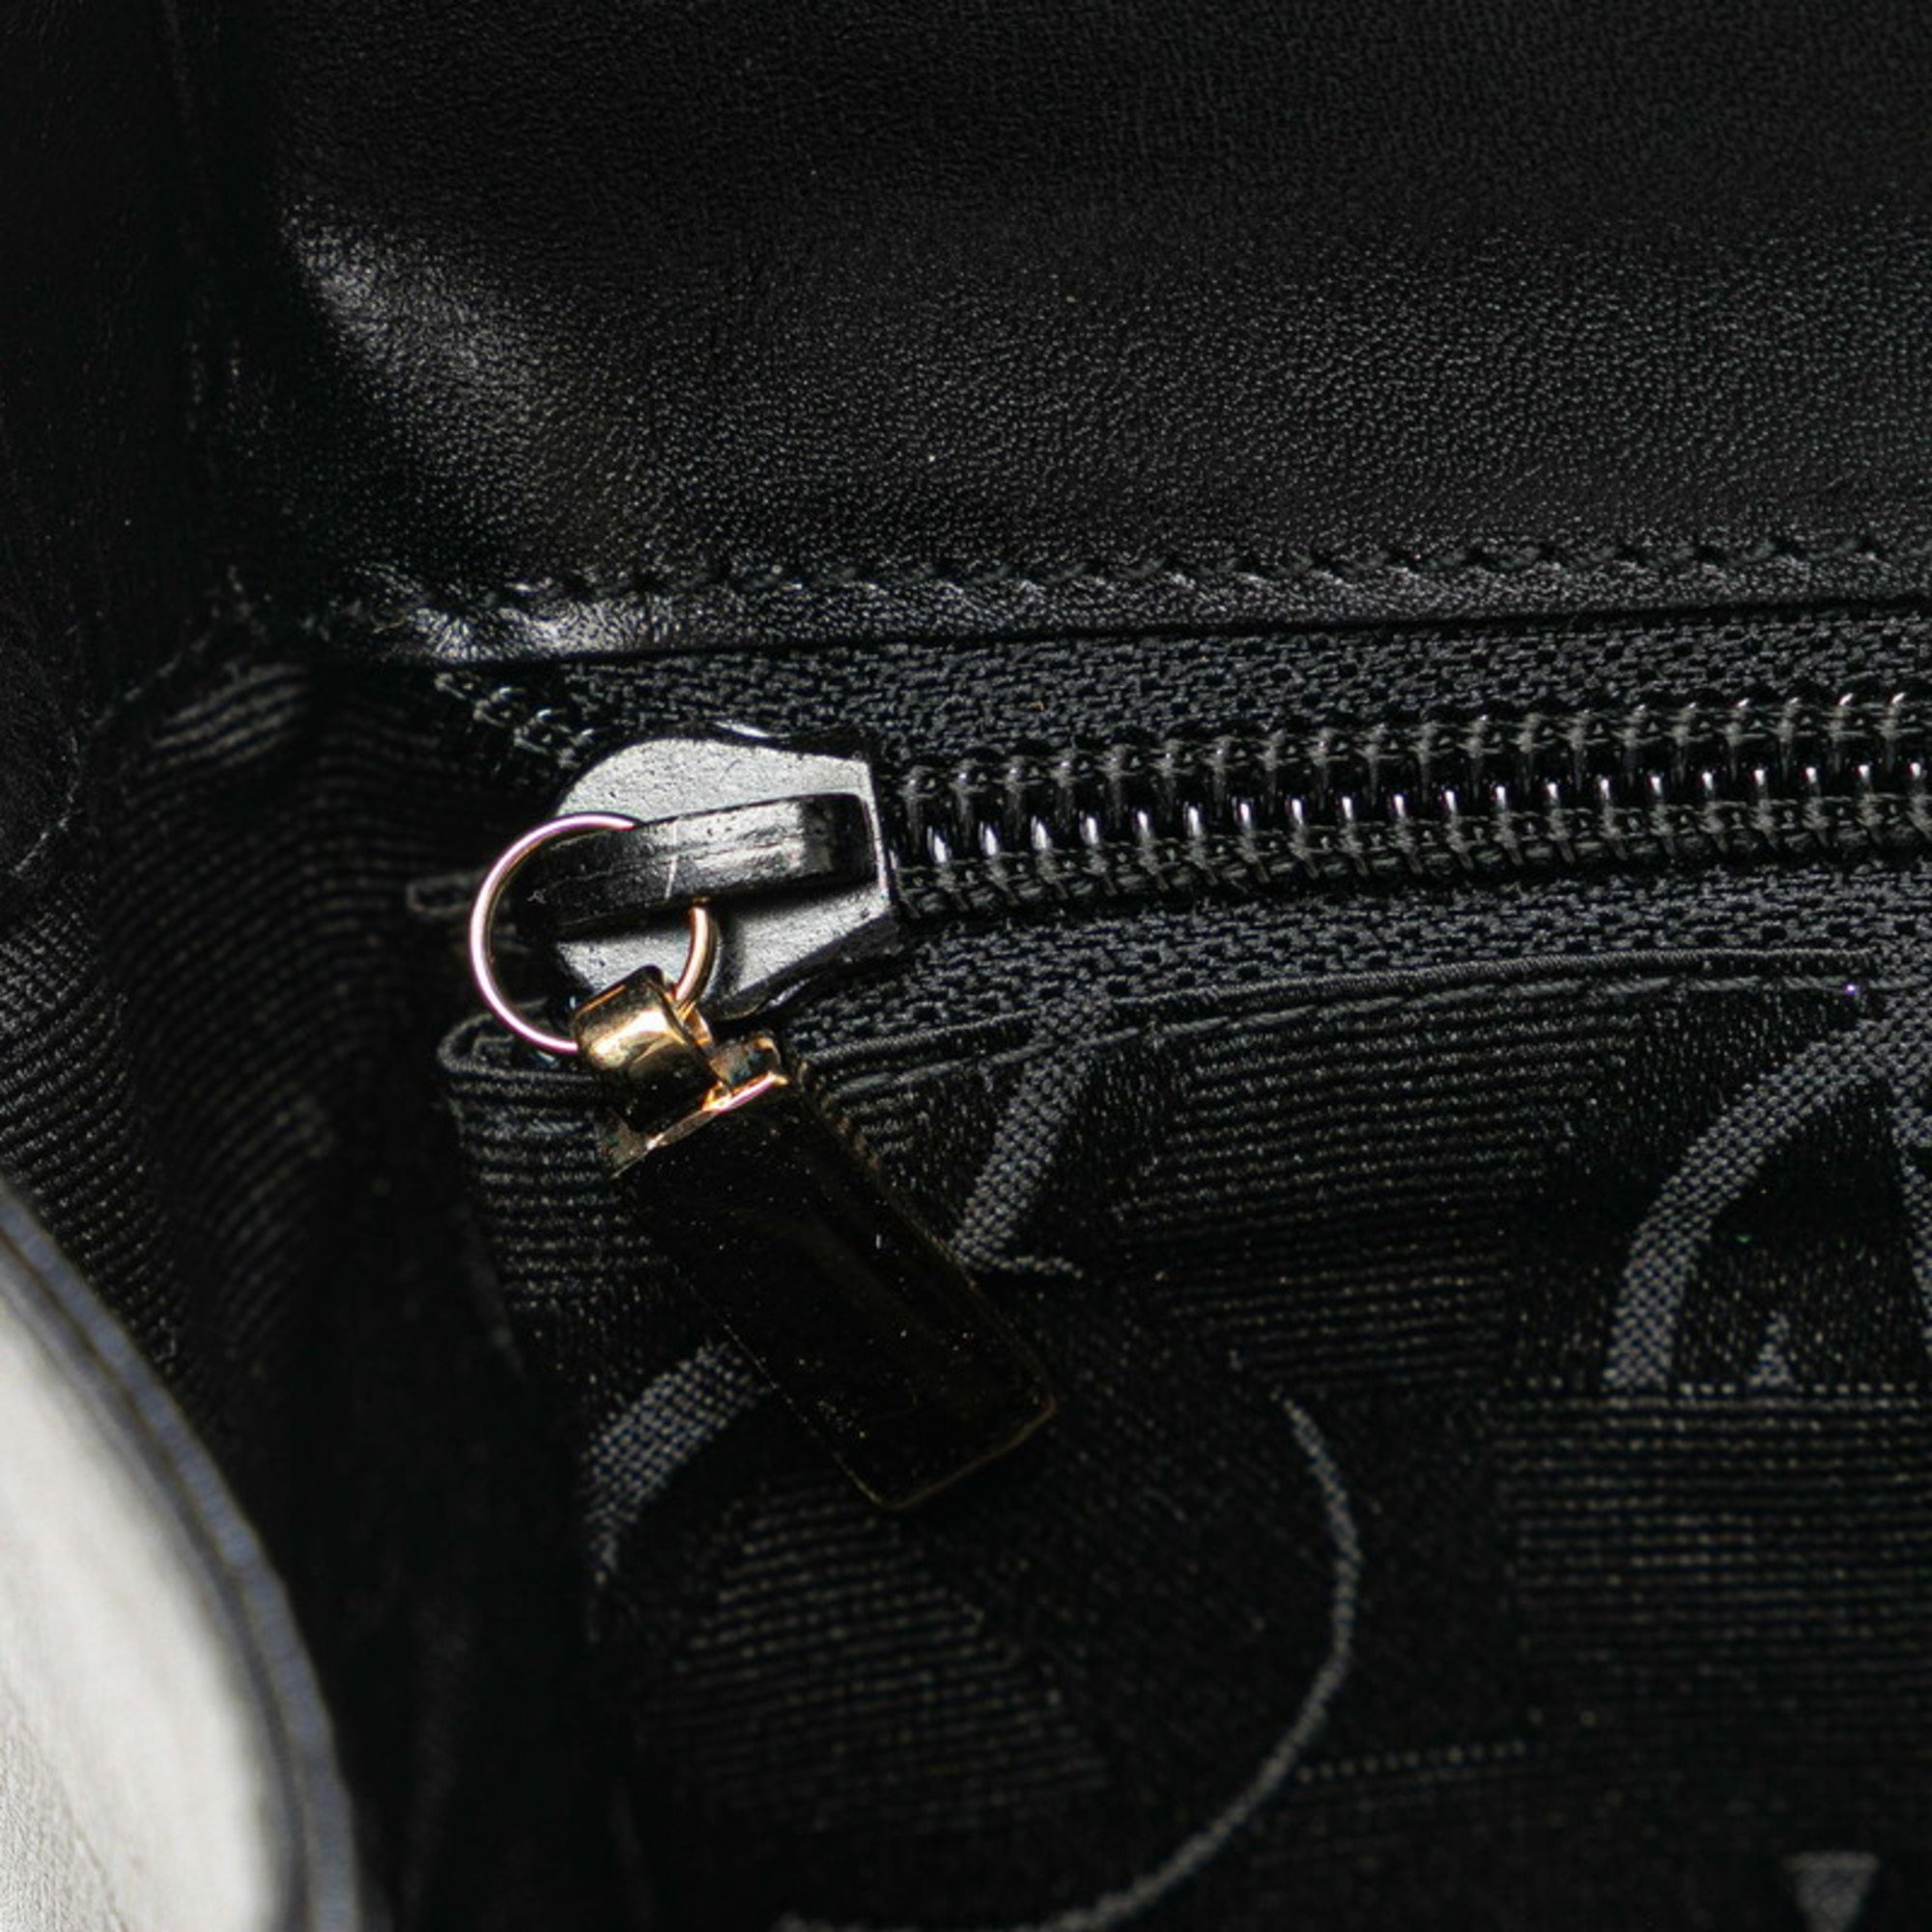 Salvatore Ferragamo Handbag Shoulder Bag AQ-21 8739 Black Leather Women's